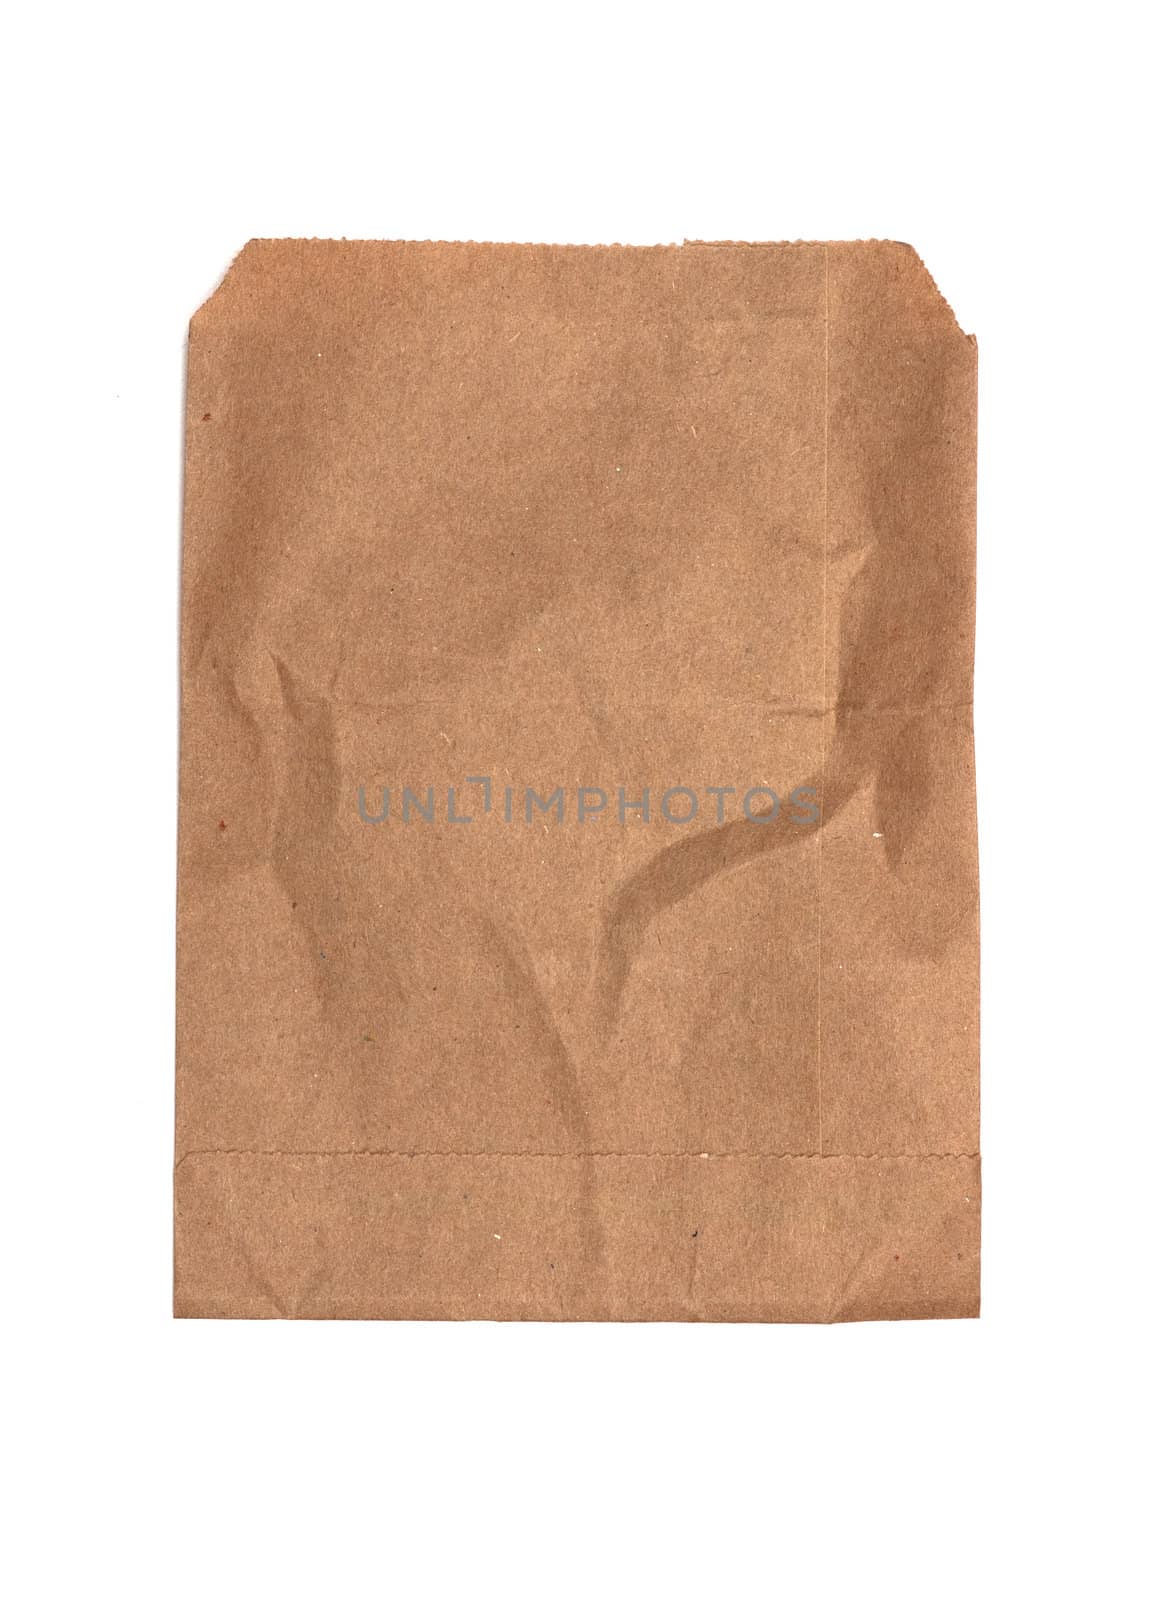 brown envelope by DNKSTUDIO